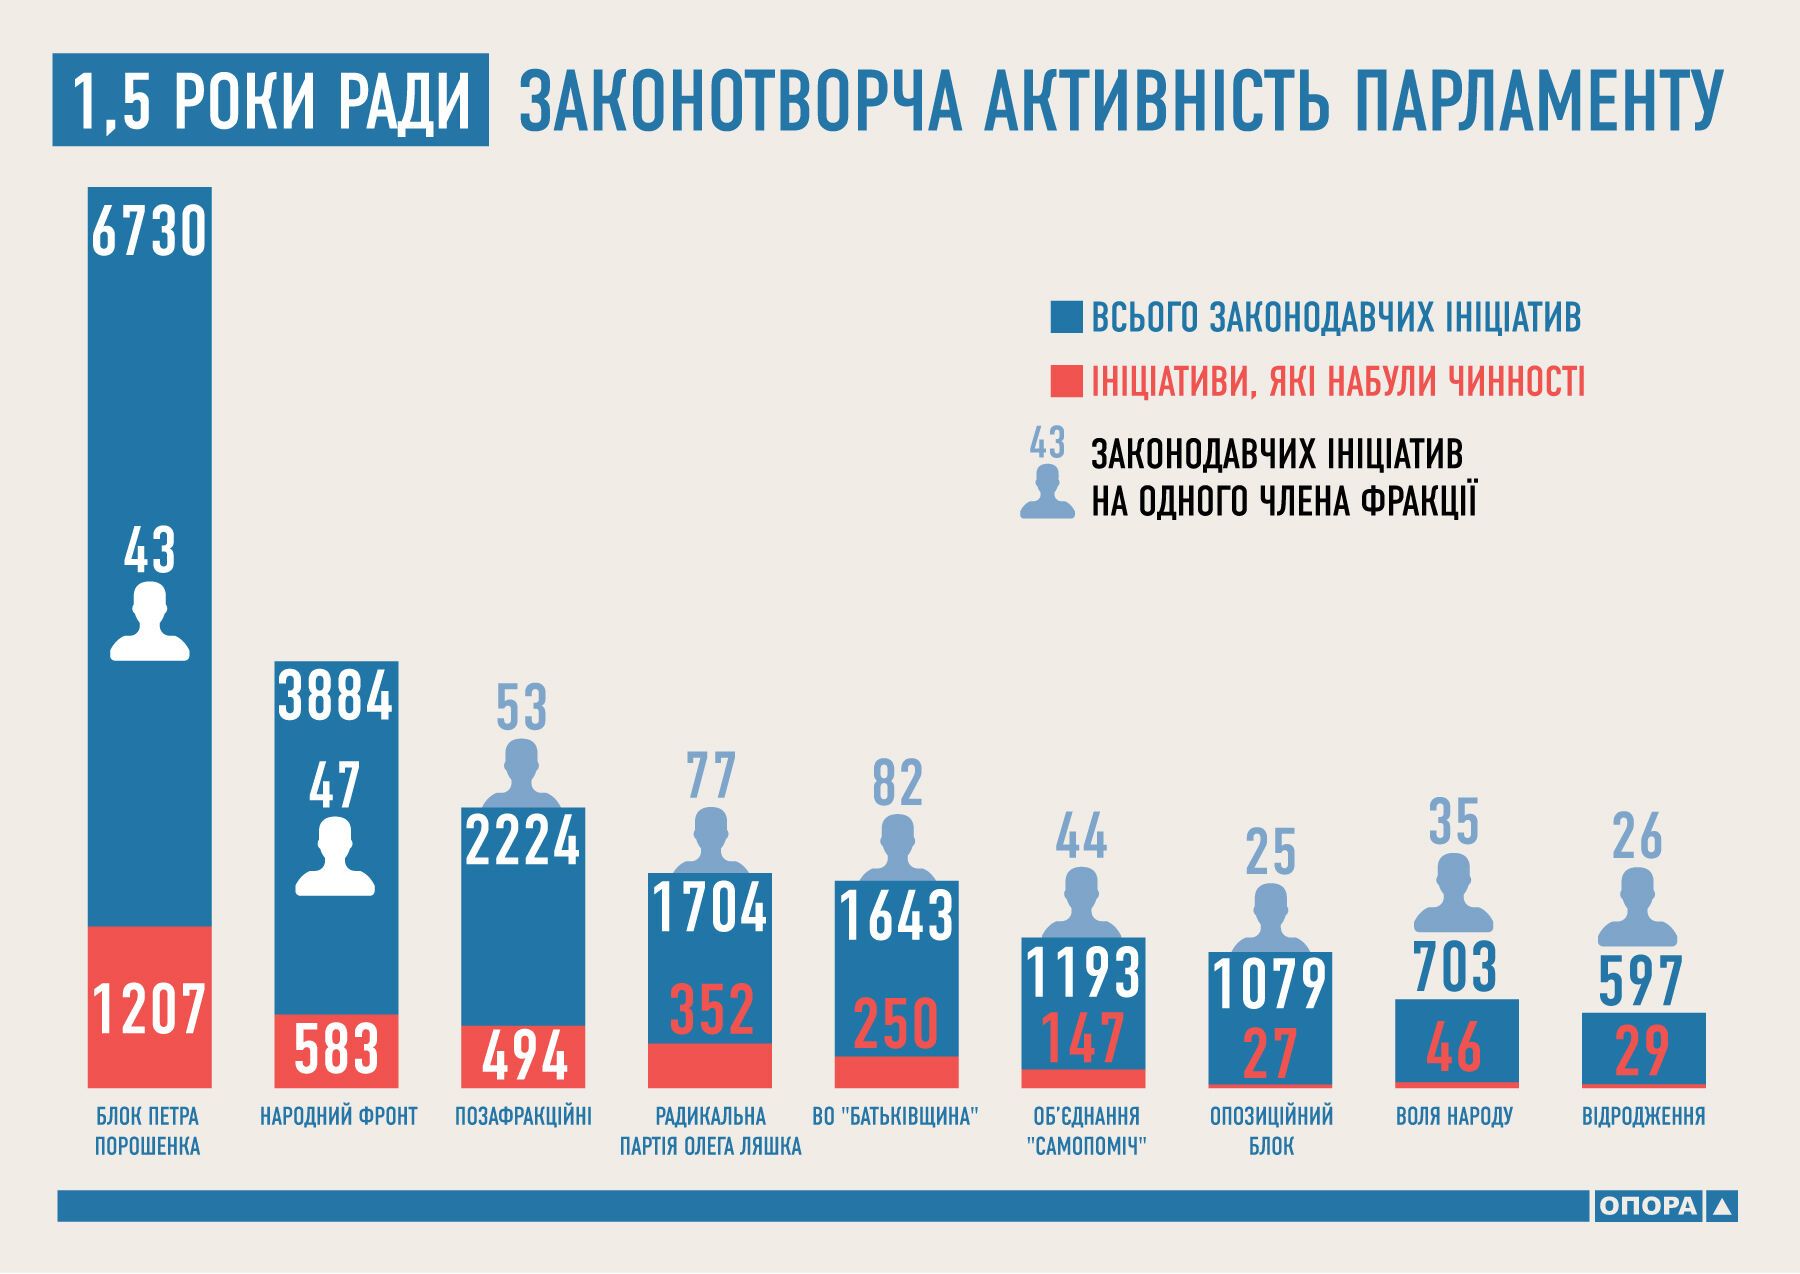 7 тыс. законопроектов за 1,5 года: Рада побила рекорды всех предыдущих лет. Инфографика 